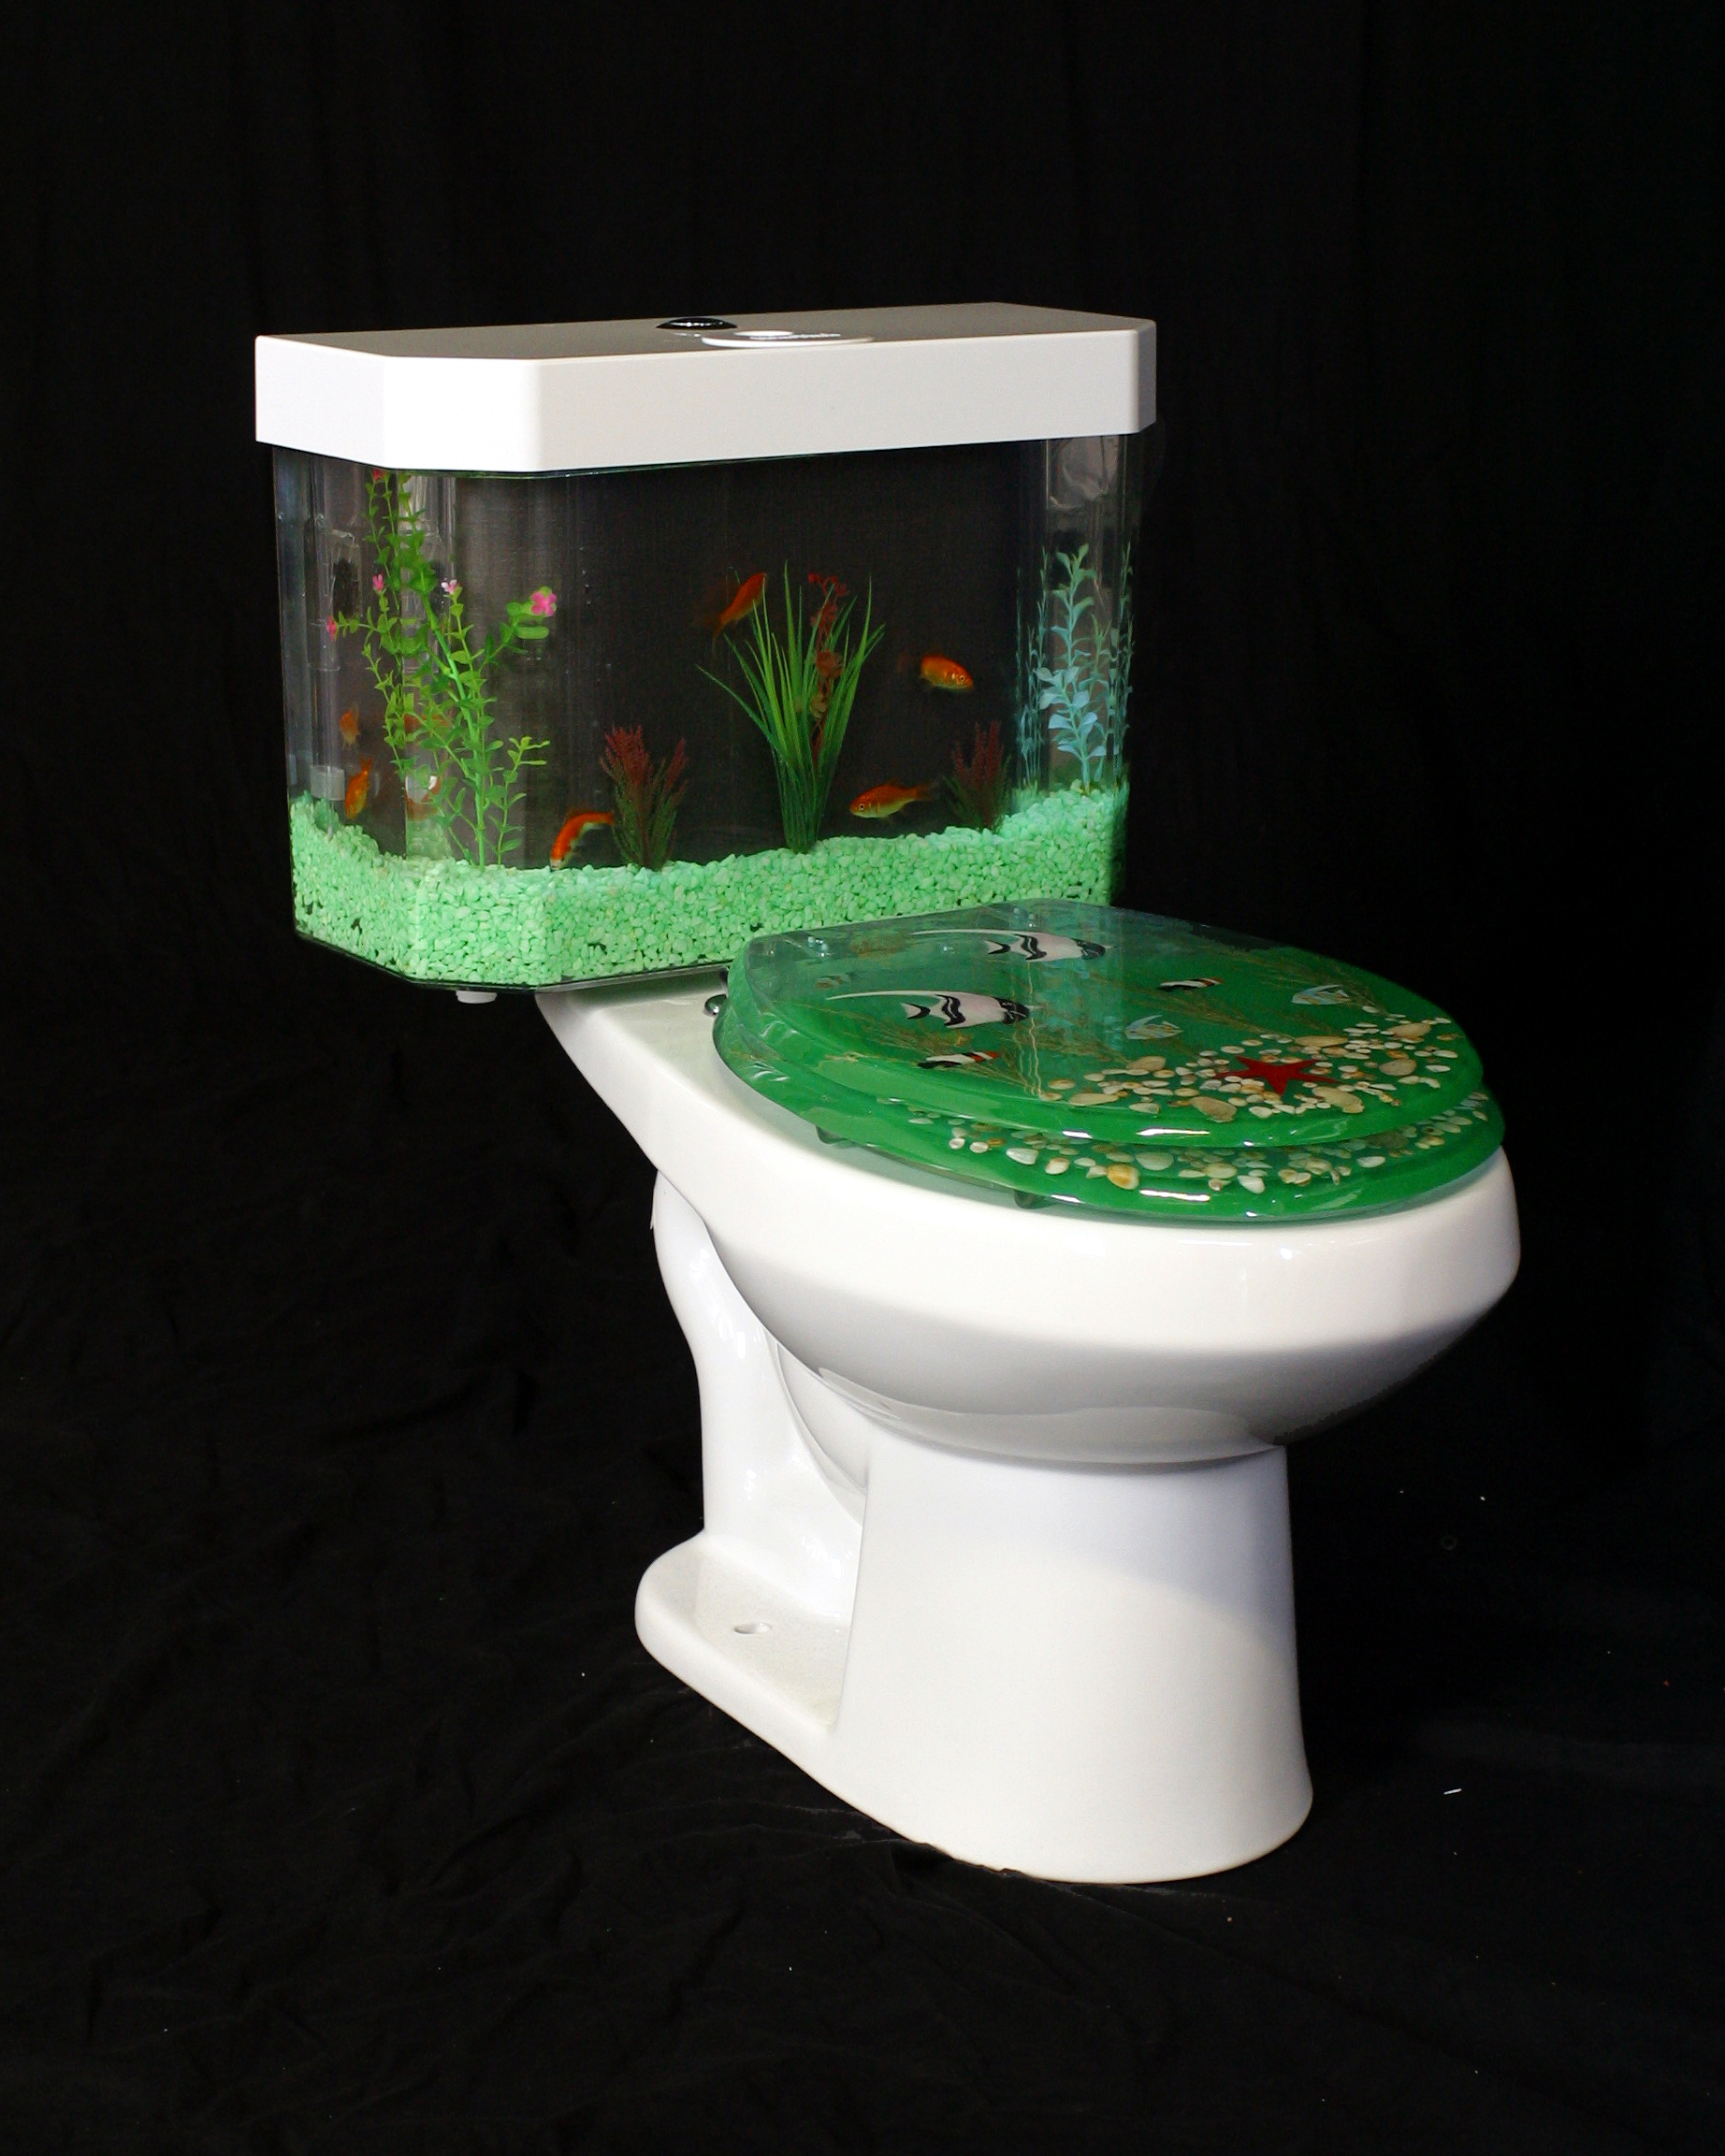 Designer acrylic toilet seats